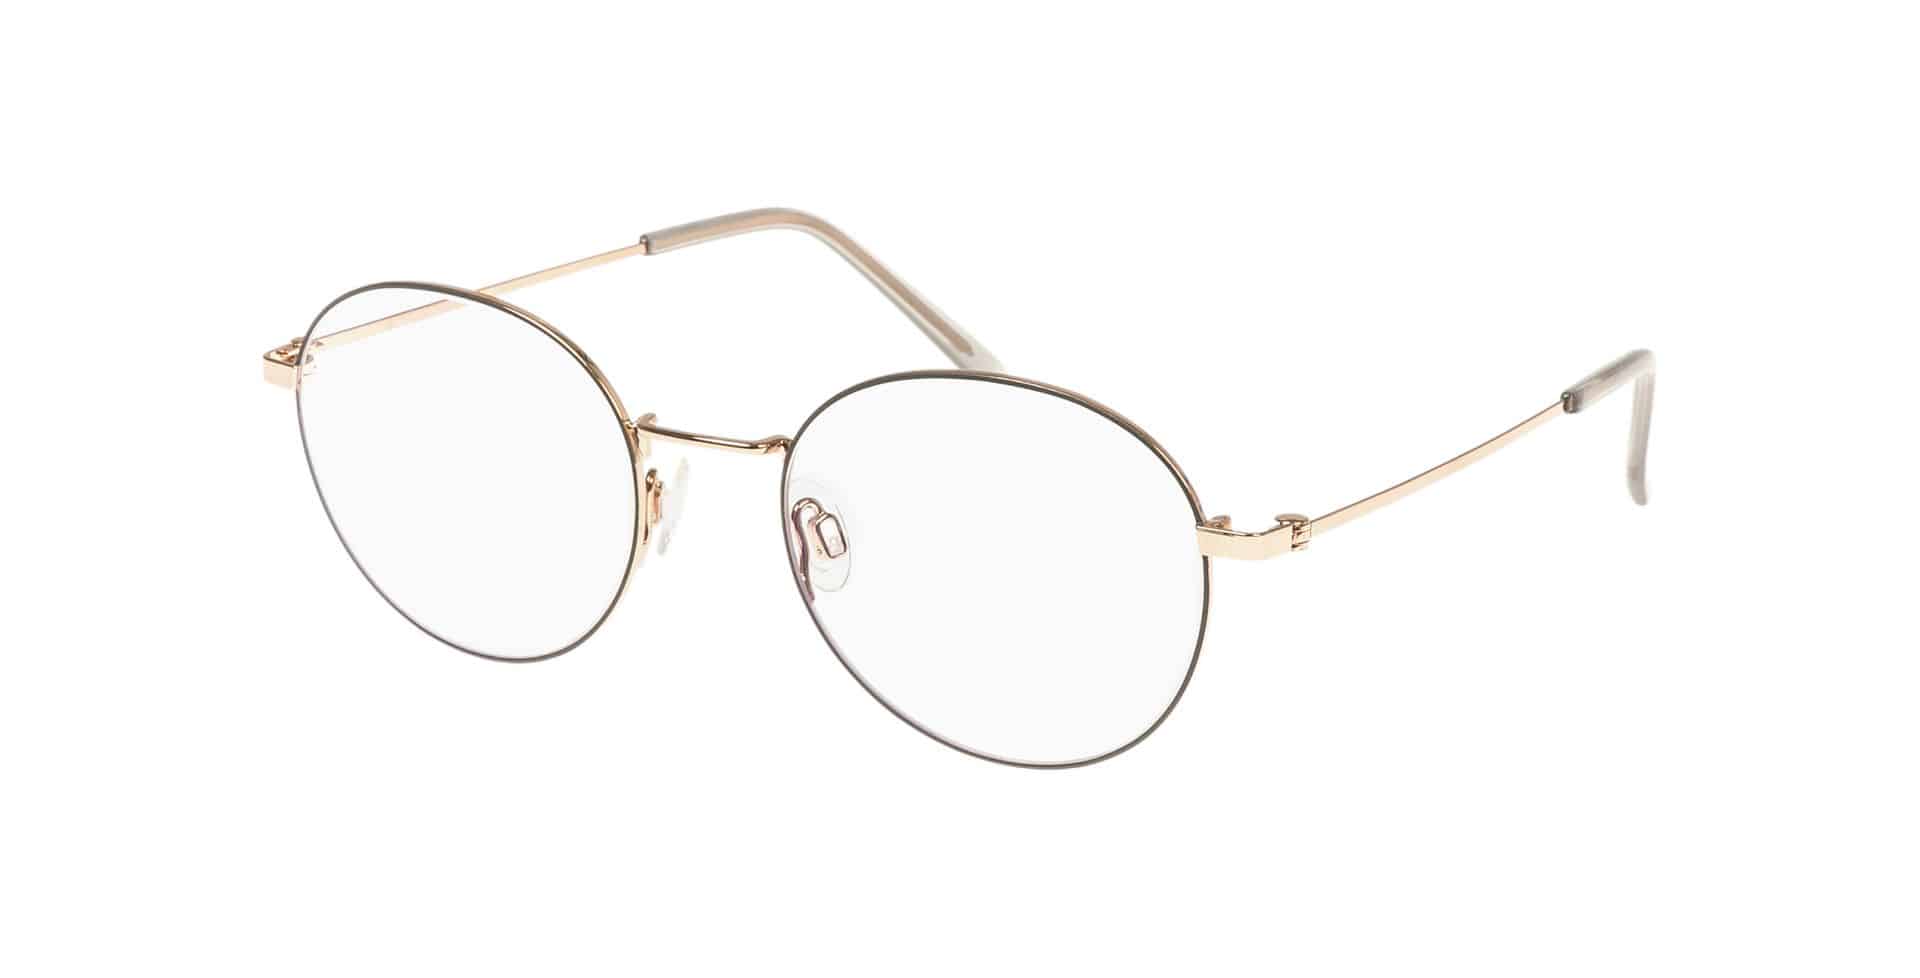 Brillen für Kleine Gesichter PARVUM 3309 rosegold grau matt glänzend